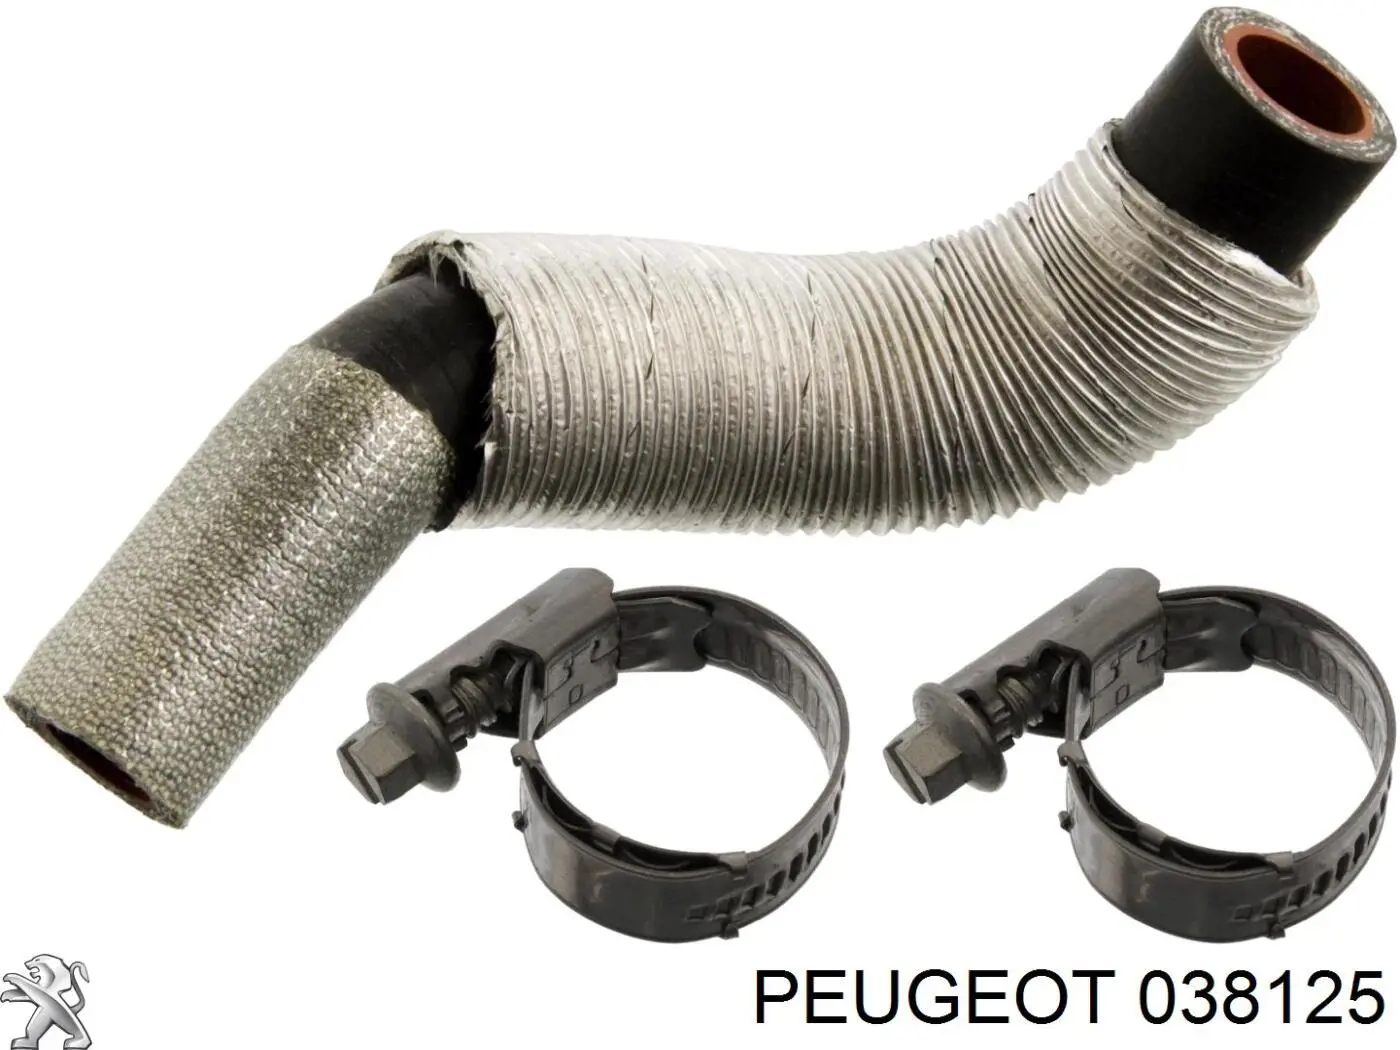 038125 Peugeot/Citroen tubo (manguera Para Drenar El Aceite De Una Turbina)